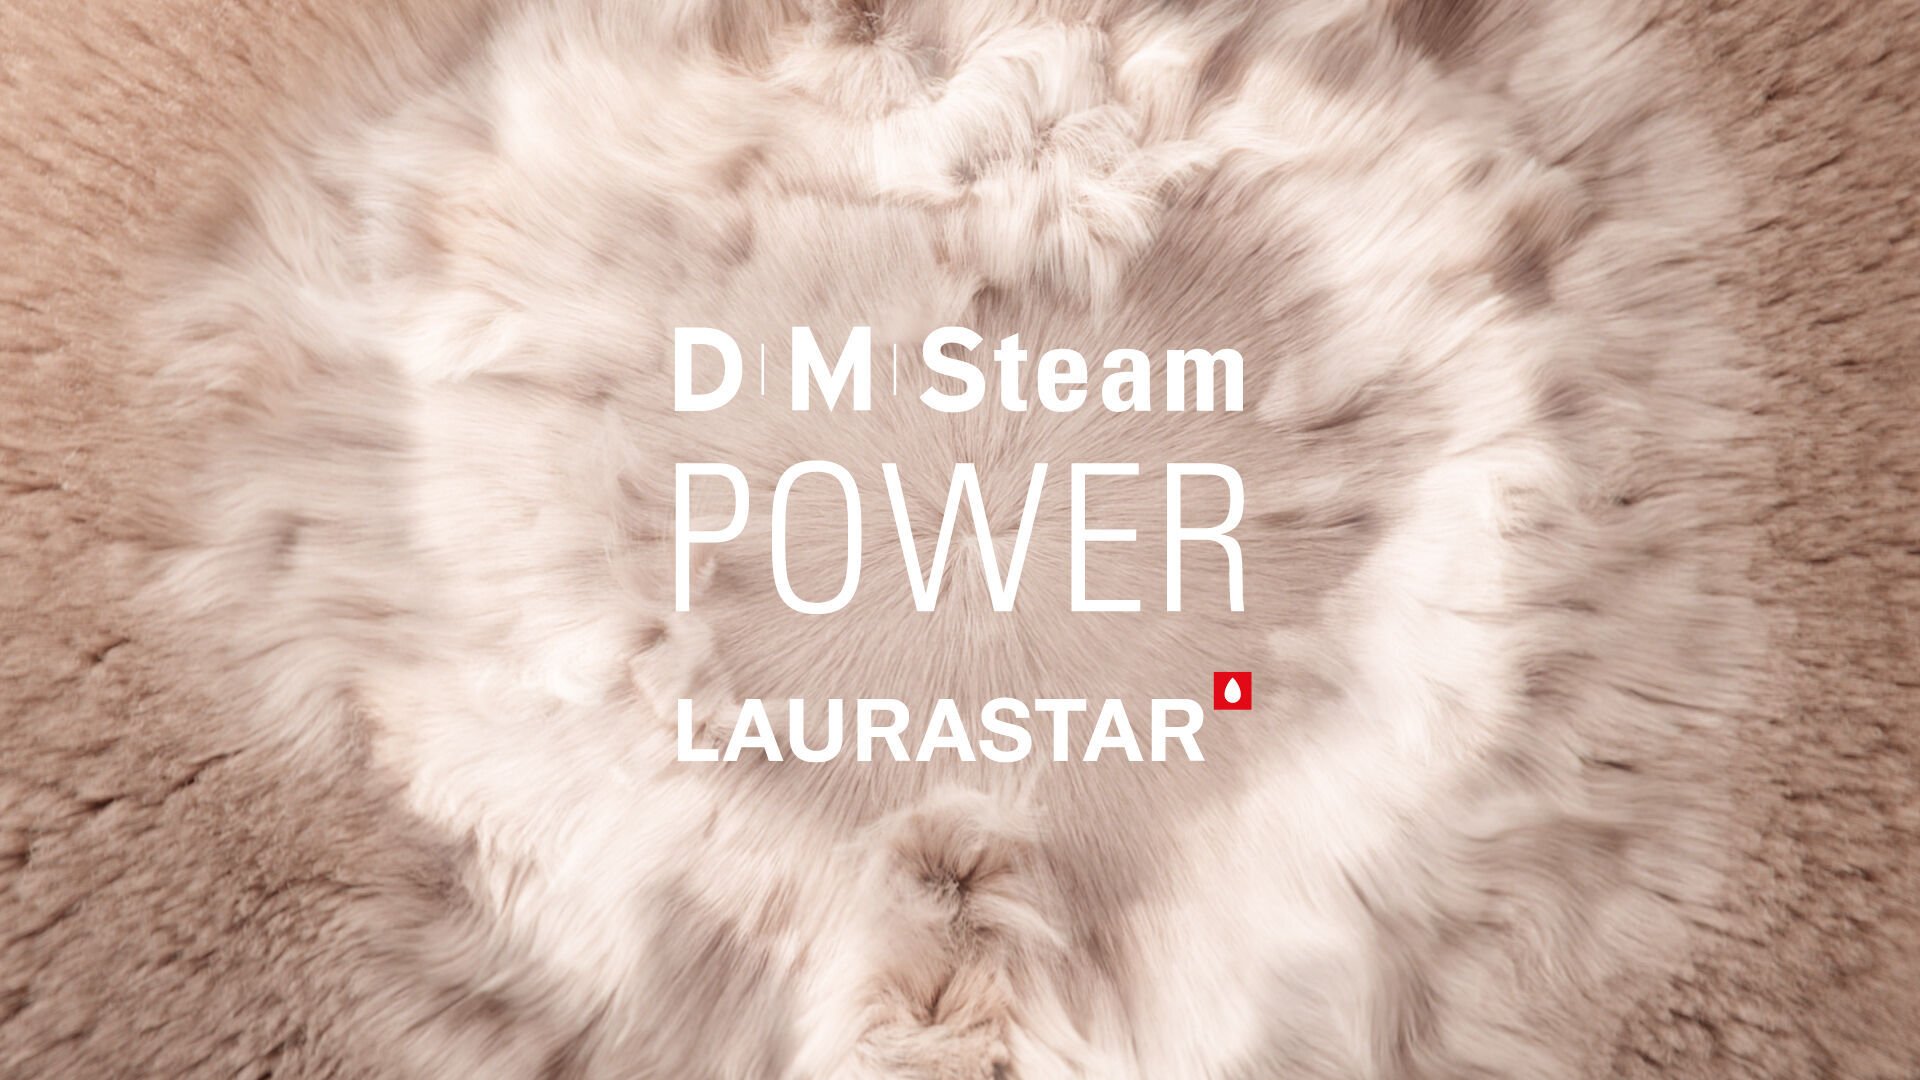 La vapeur DMS de Laurastar, technologie exclusive pour une performance, un soin et une hygiène exceptionnels sur toutes les matières